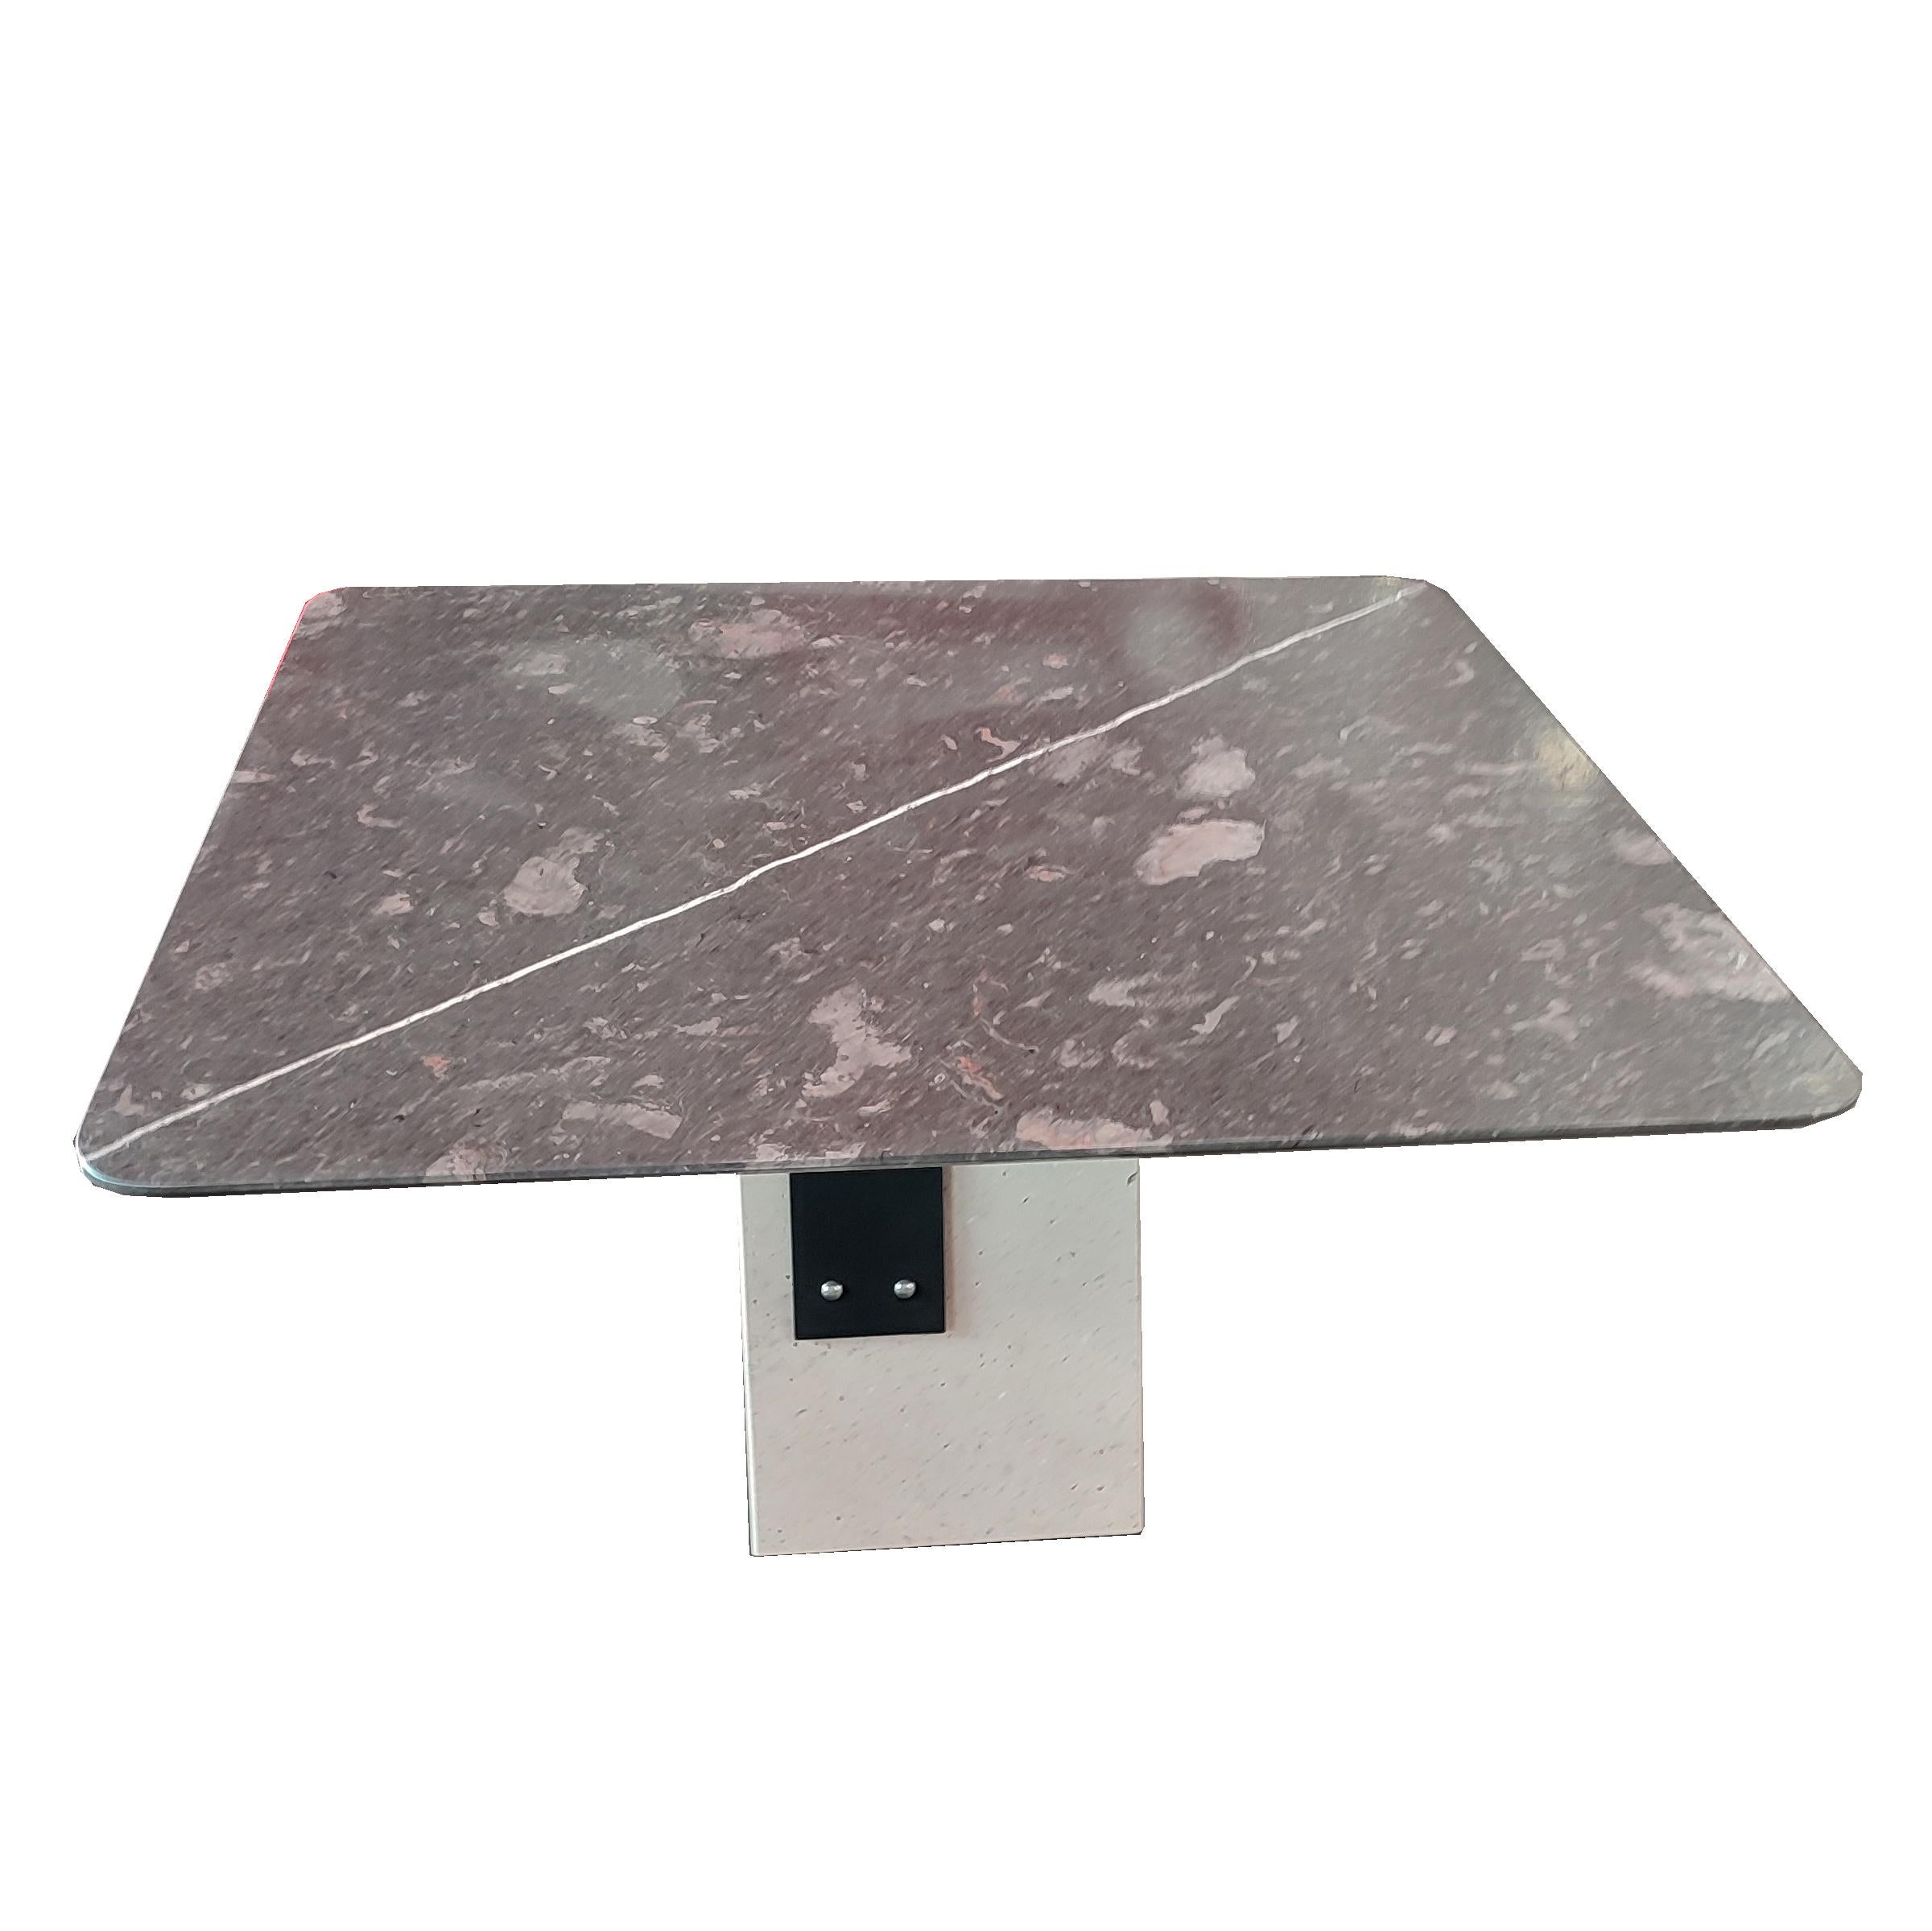 ZALEO Dining Marble Contemporary Table Campaspero & Purple Stone Meddel Auf Lager.
Dieser Designer-Marmortisch basiert auf einem zentralen Sockel aus Campaspero-Sandstein, der ursprünglich aus Kastilien in Spanien stammt, der gleichen Region wie die